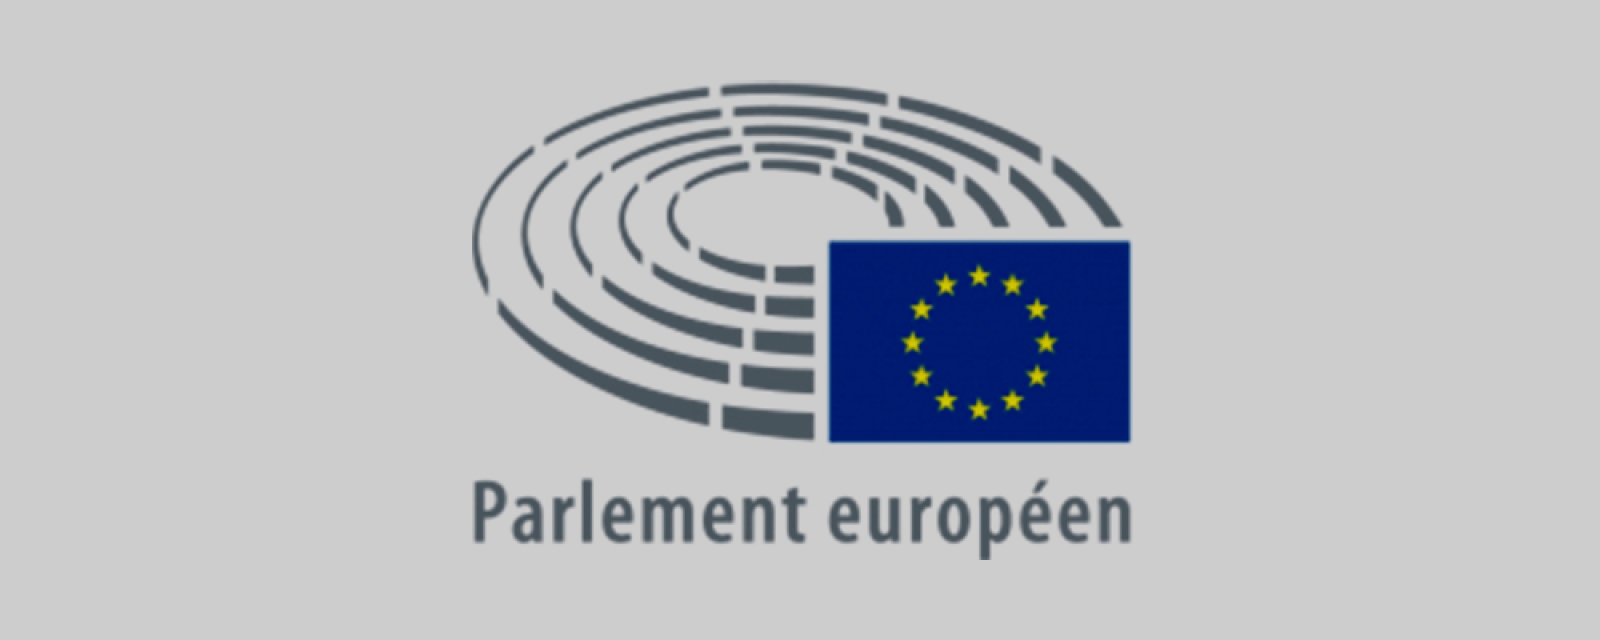 Parlement europeen logo